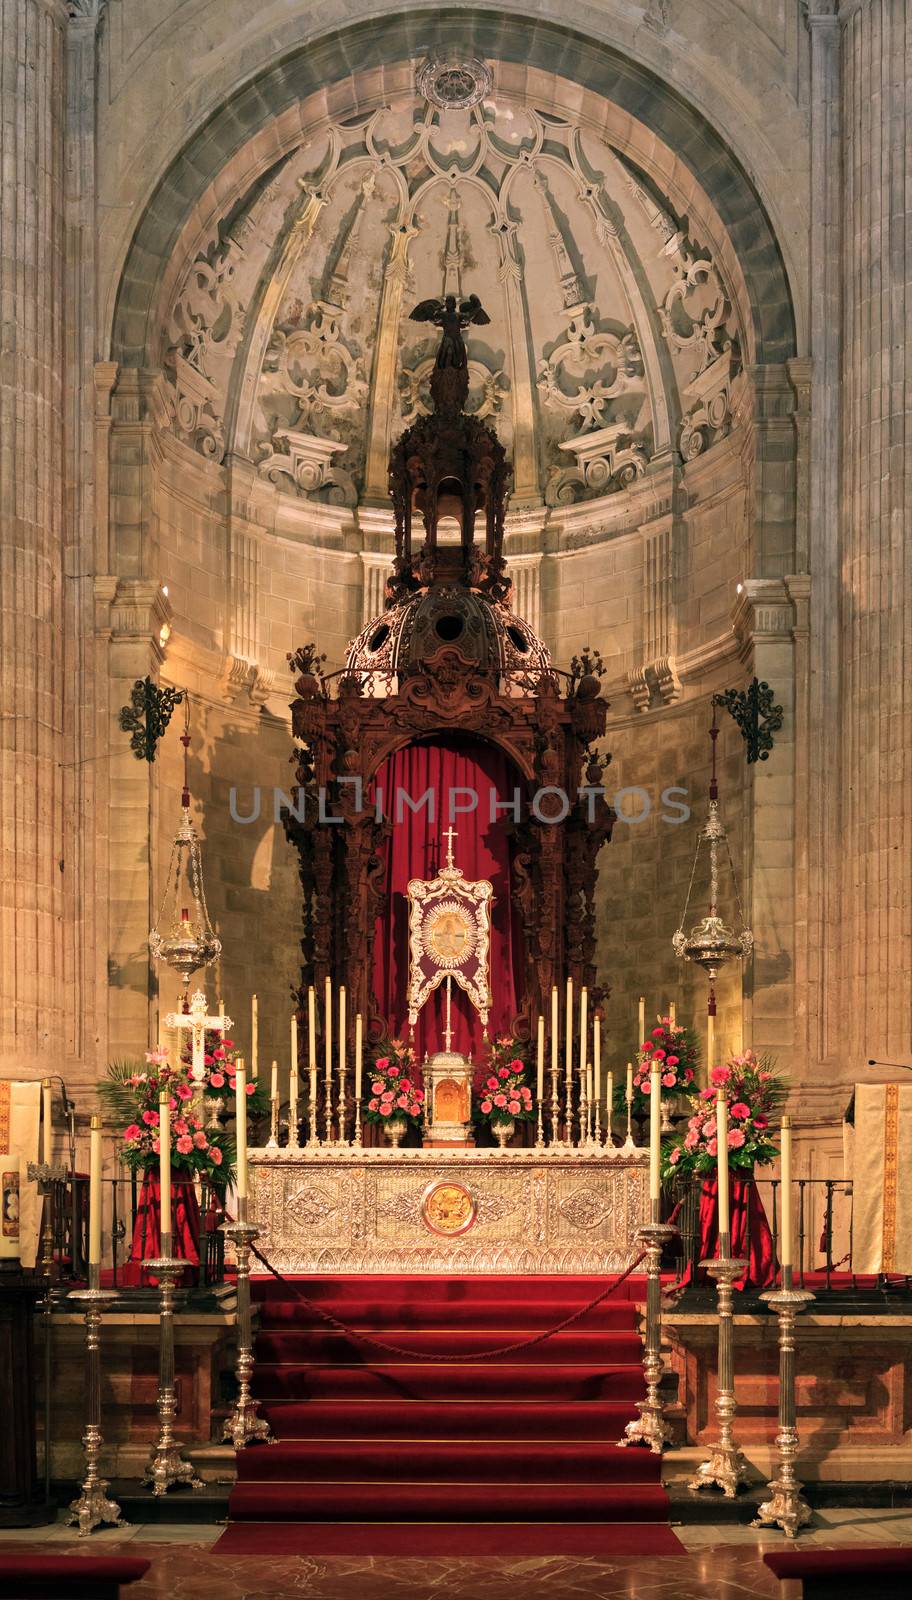 Santa Maria church, Ronda, Spain - church interior by Nobilior